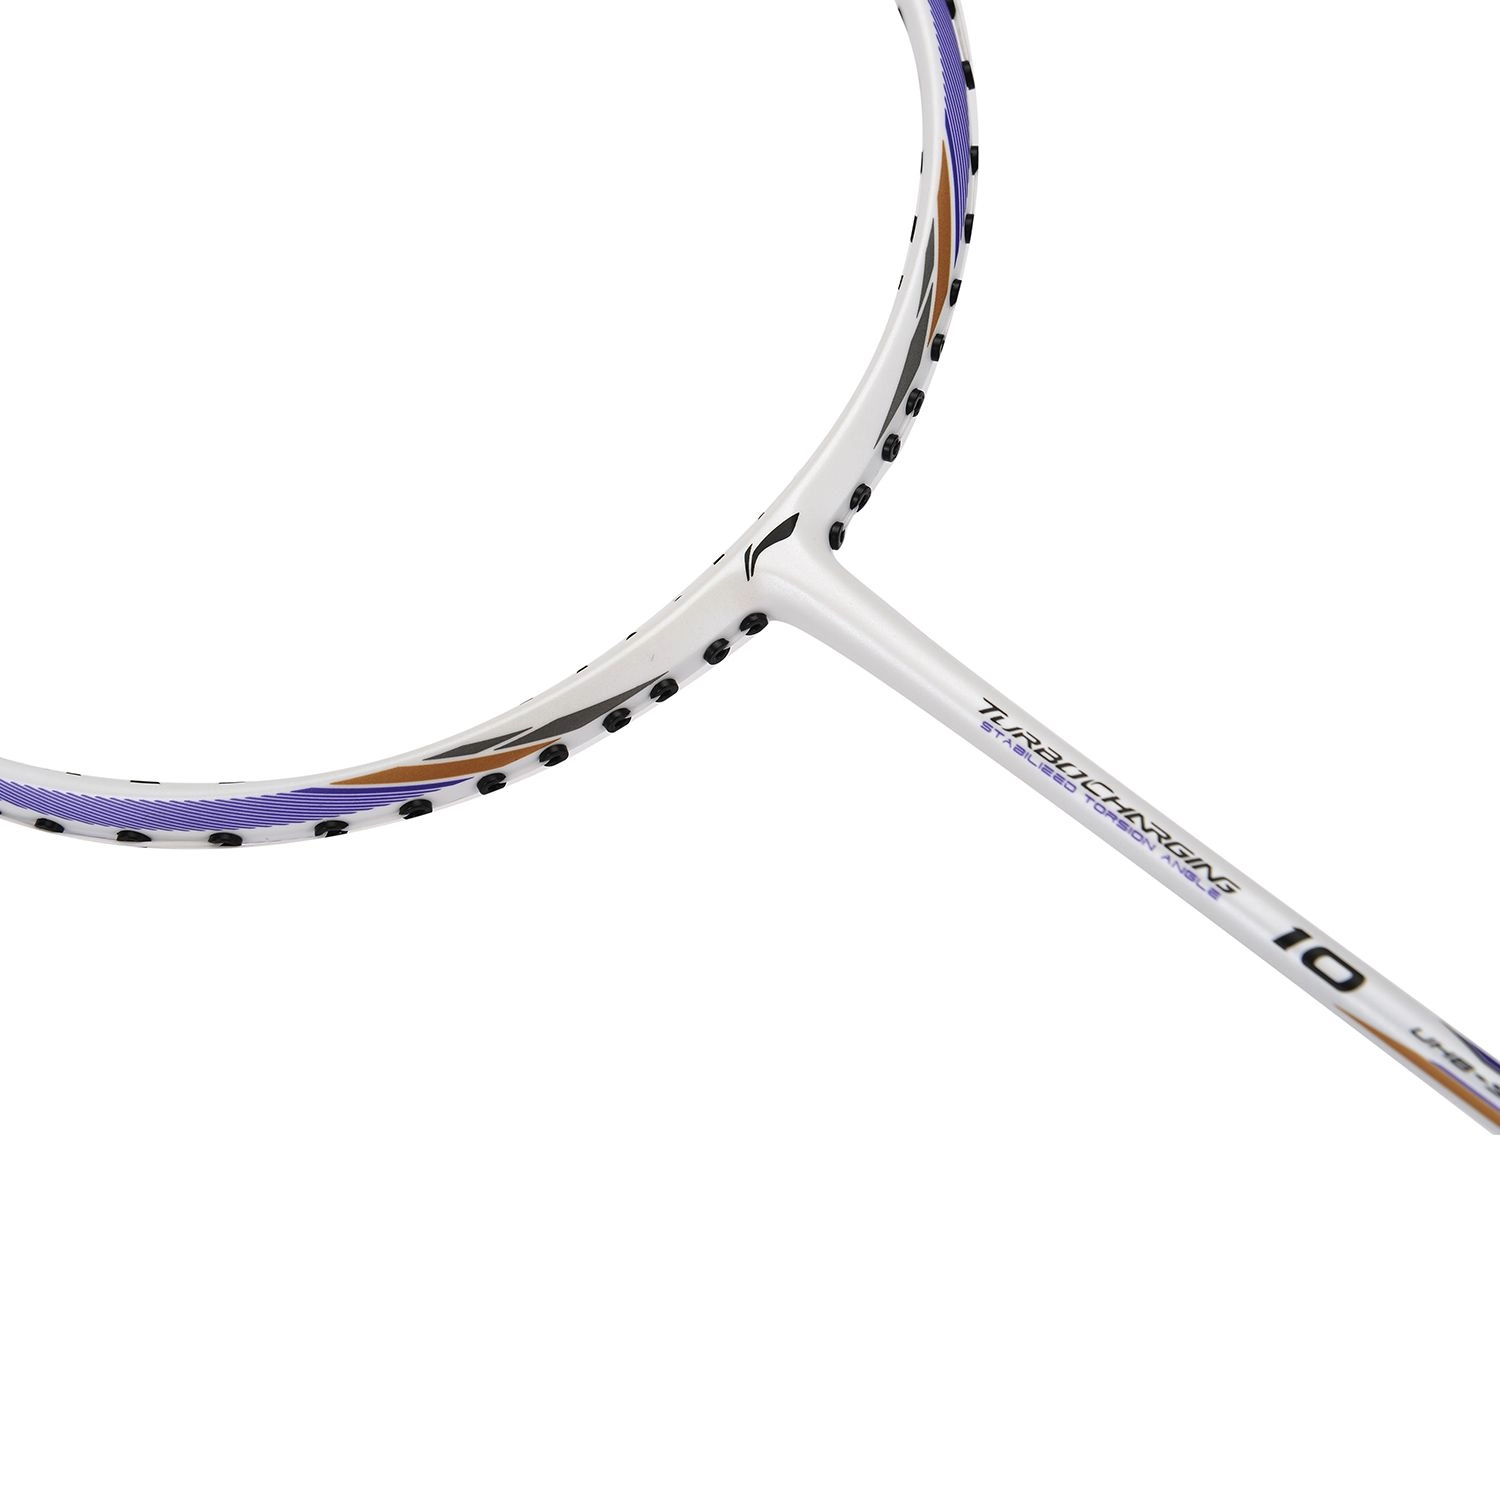 Li-Ning 2018 Turbo Charging 10 Badminton Racket | White Gold